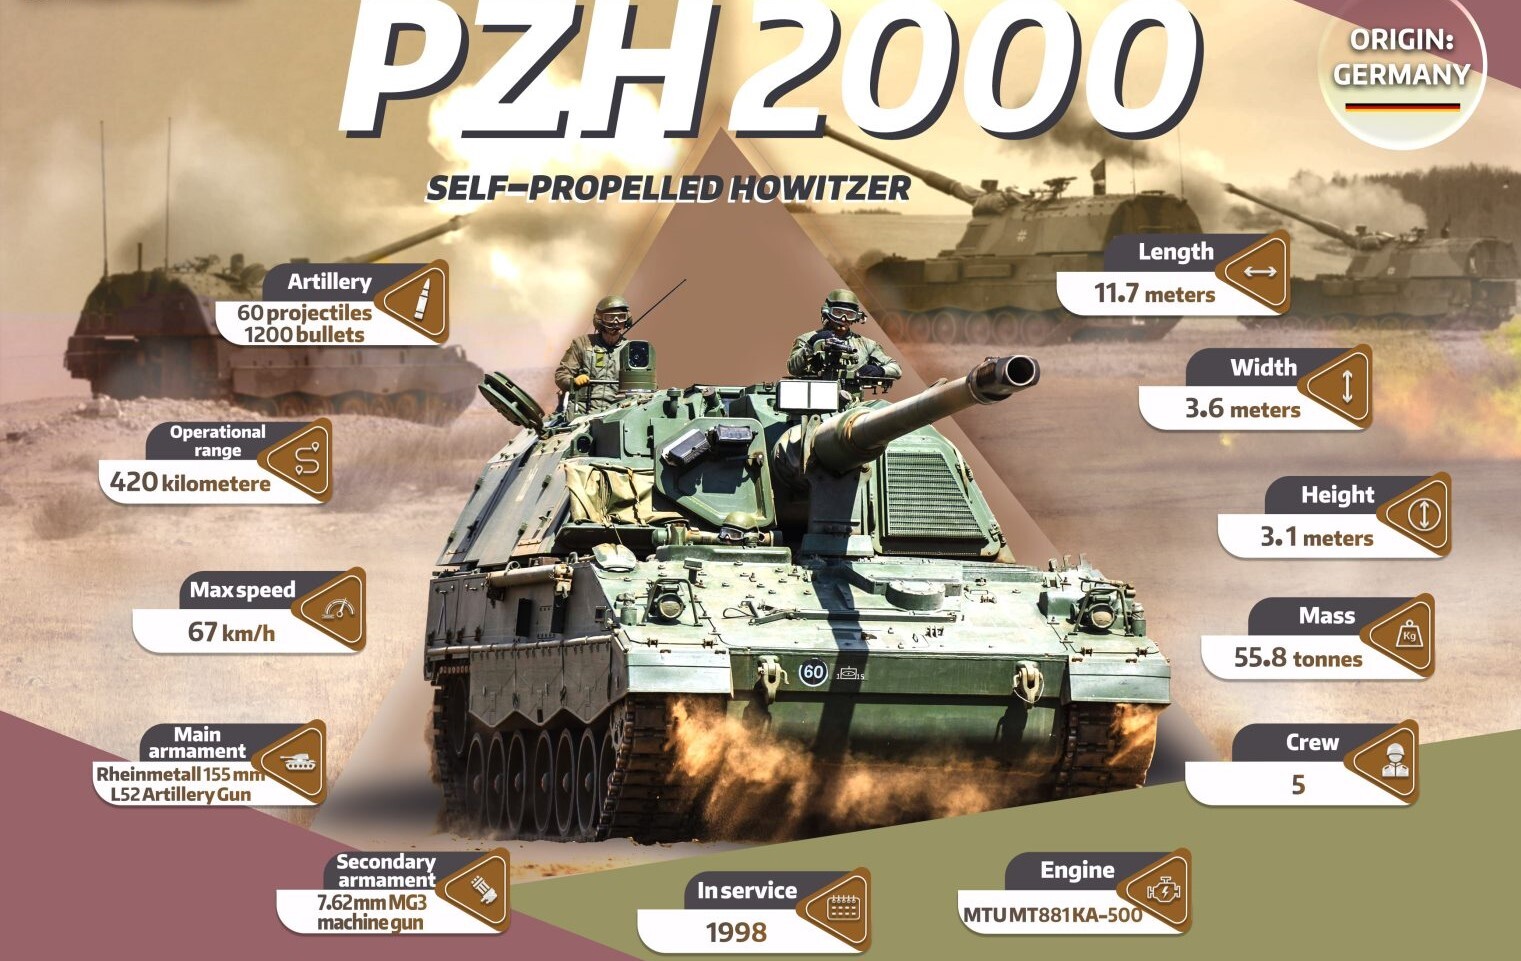 مشخصات هویتزر خودکششی PzH 2000